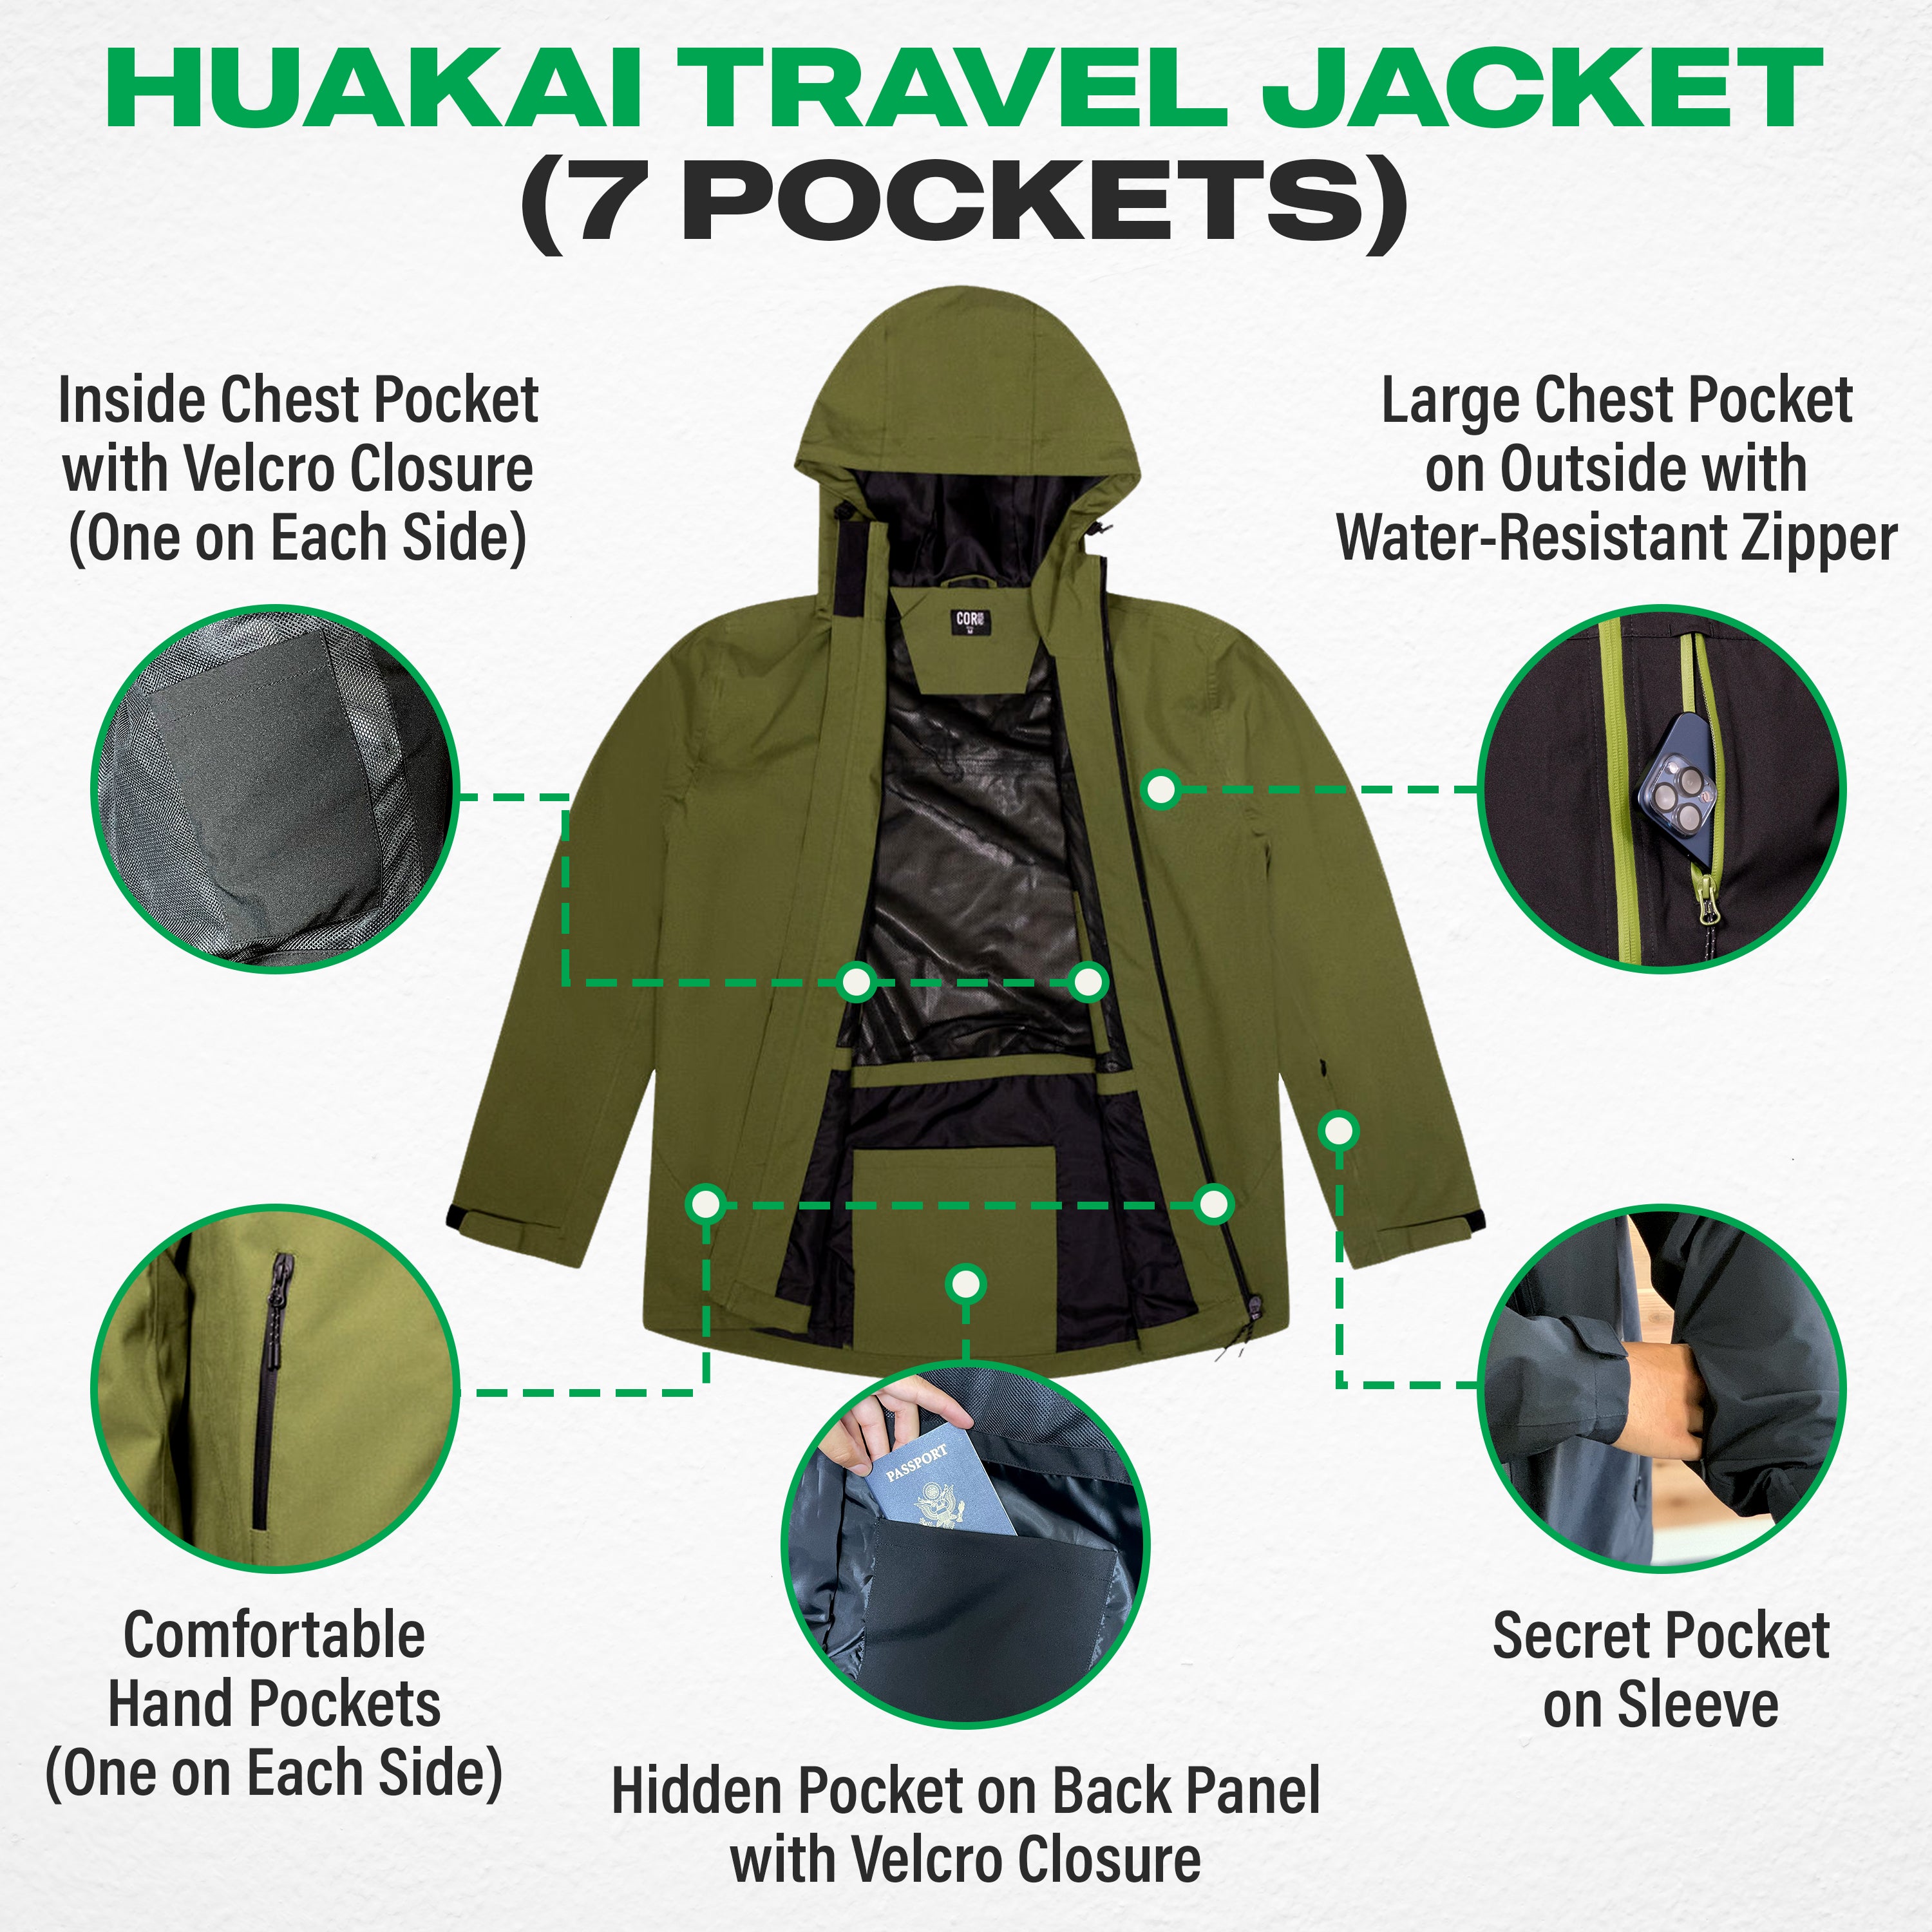 The Huakai Travel Rain Jacket